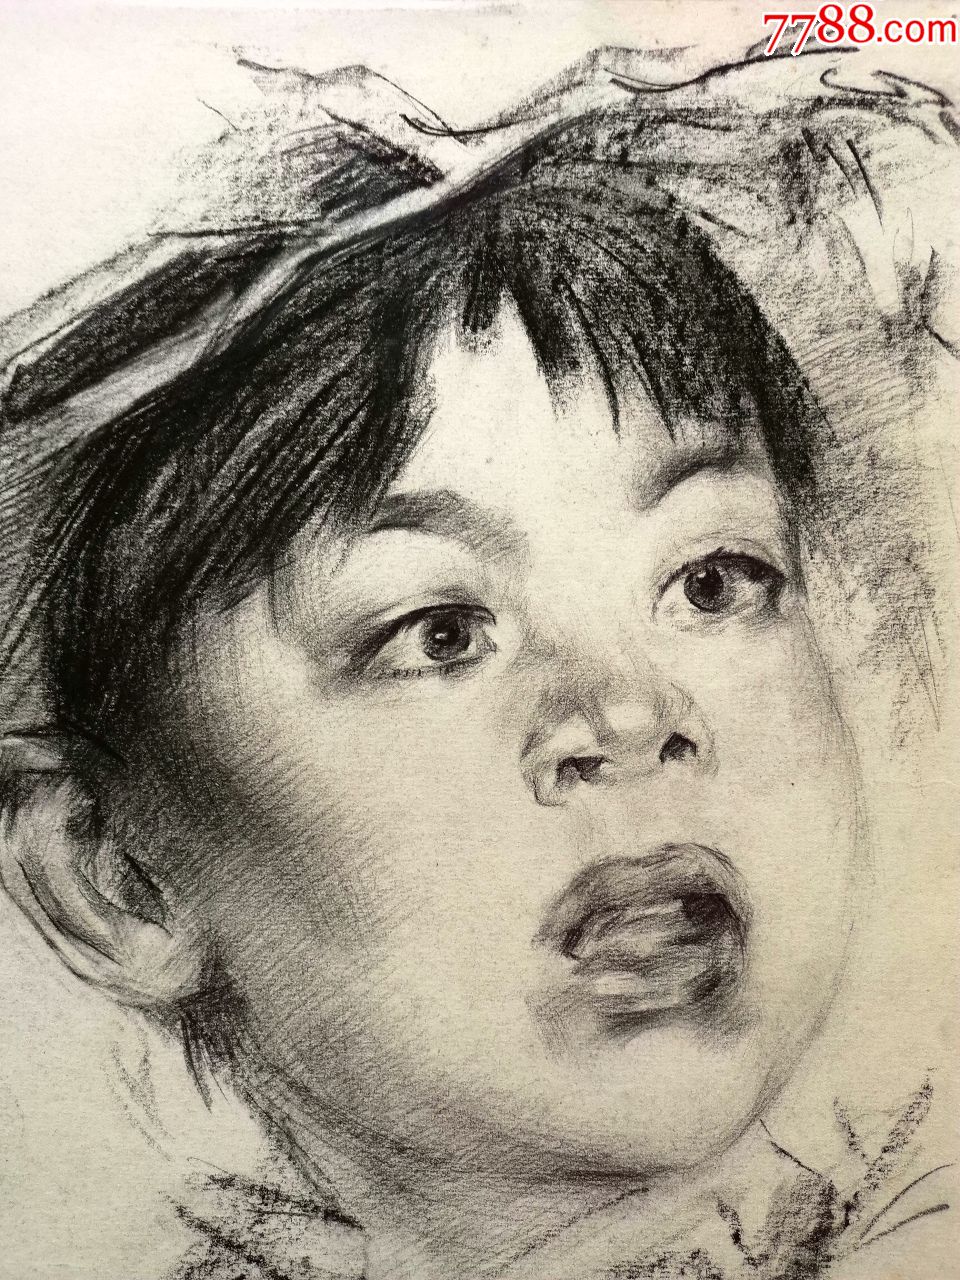 80年代落款nf的木炭条人像素描画稿原作《小孩肖像》